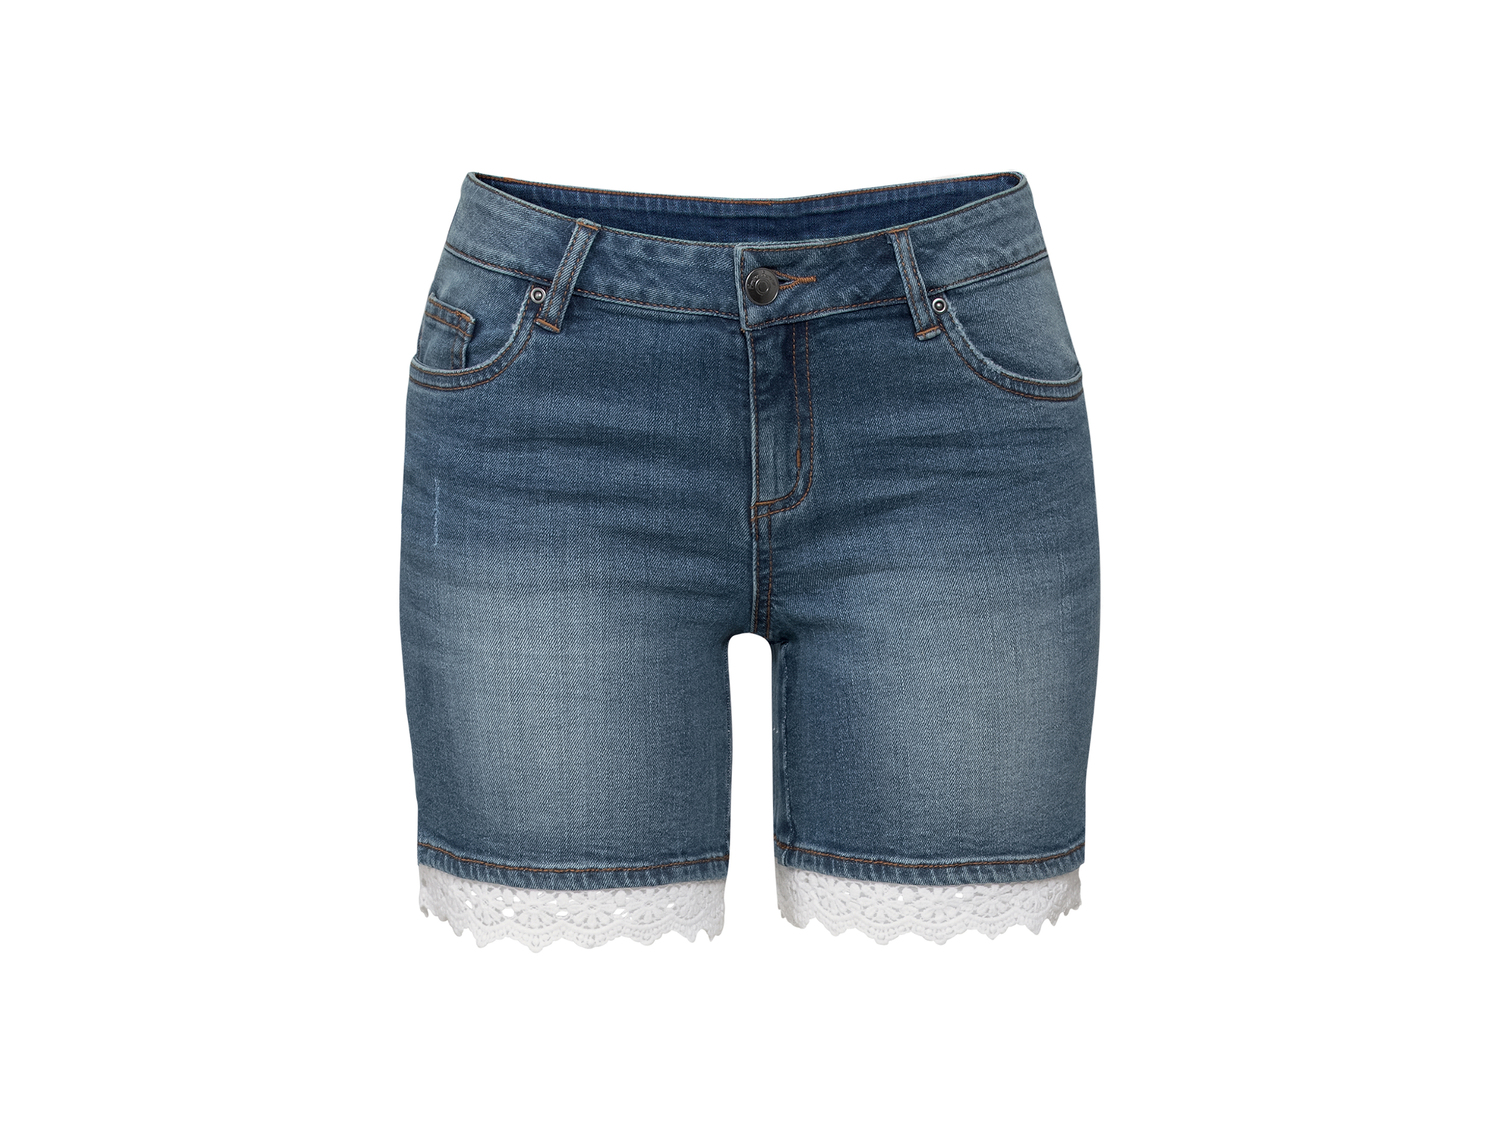 Shorts in jeans da donna Esmara, prezzo 7.99 &#8364; 
Misure: 38-48
Taglie disponibili

Caratteristiche

- ...